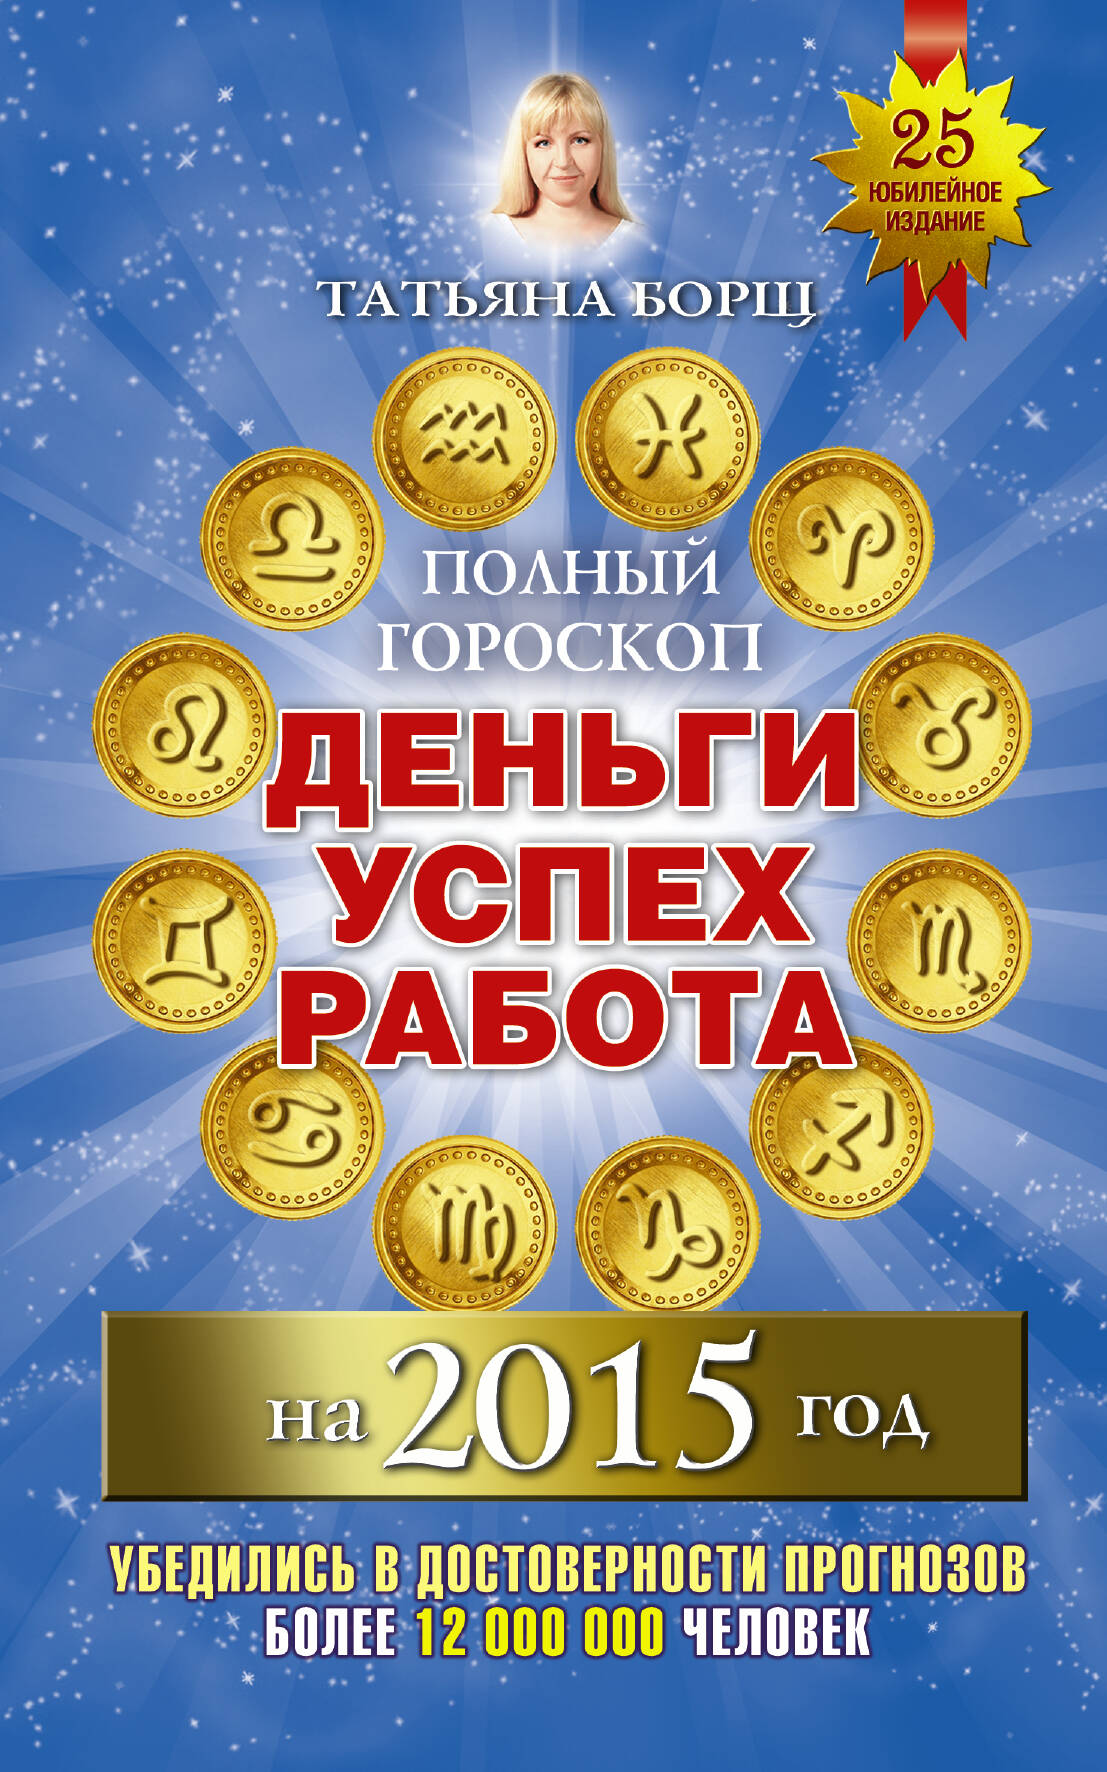  Полный гороскоп: деньги, успех, работа на 2015 год - страница 0